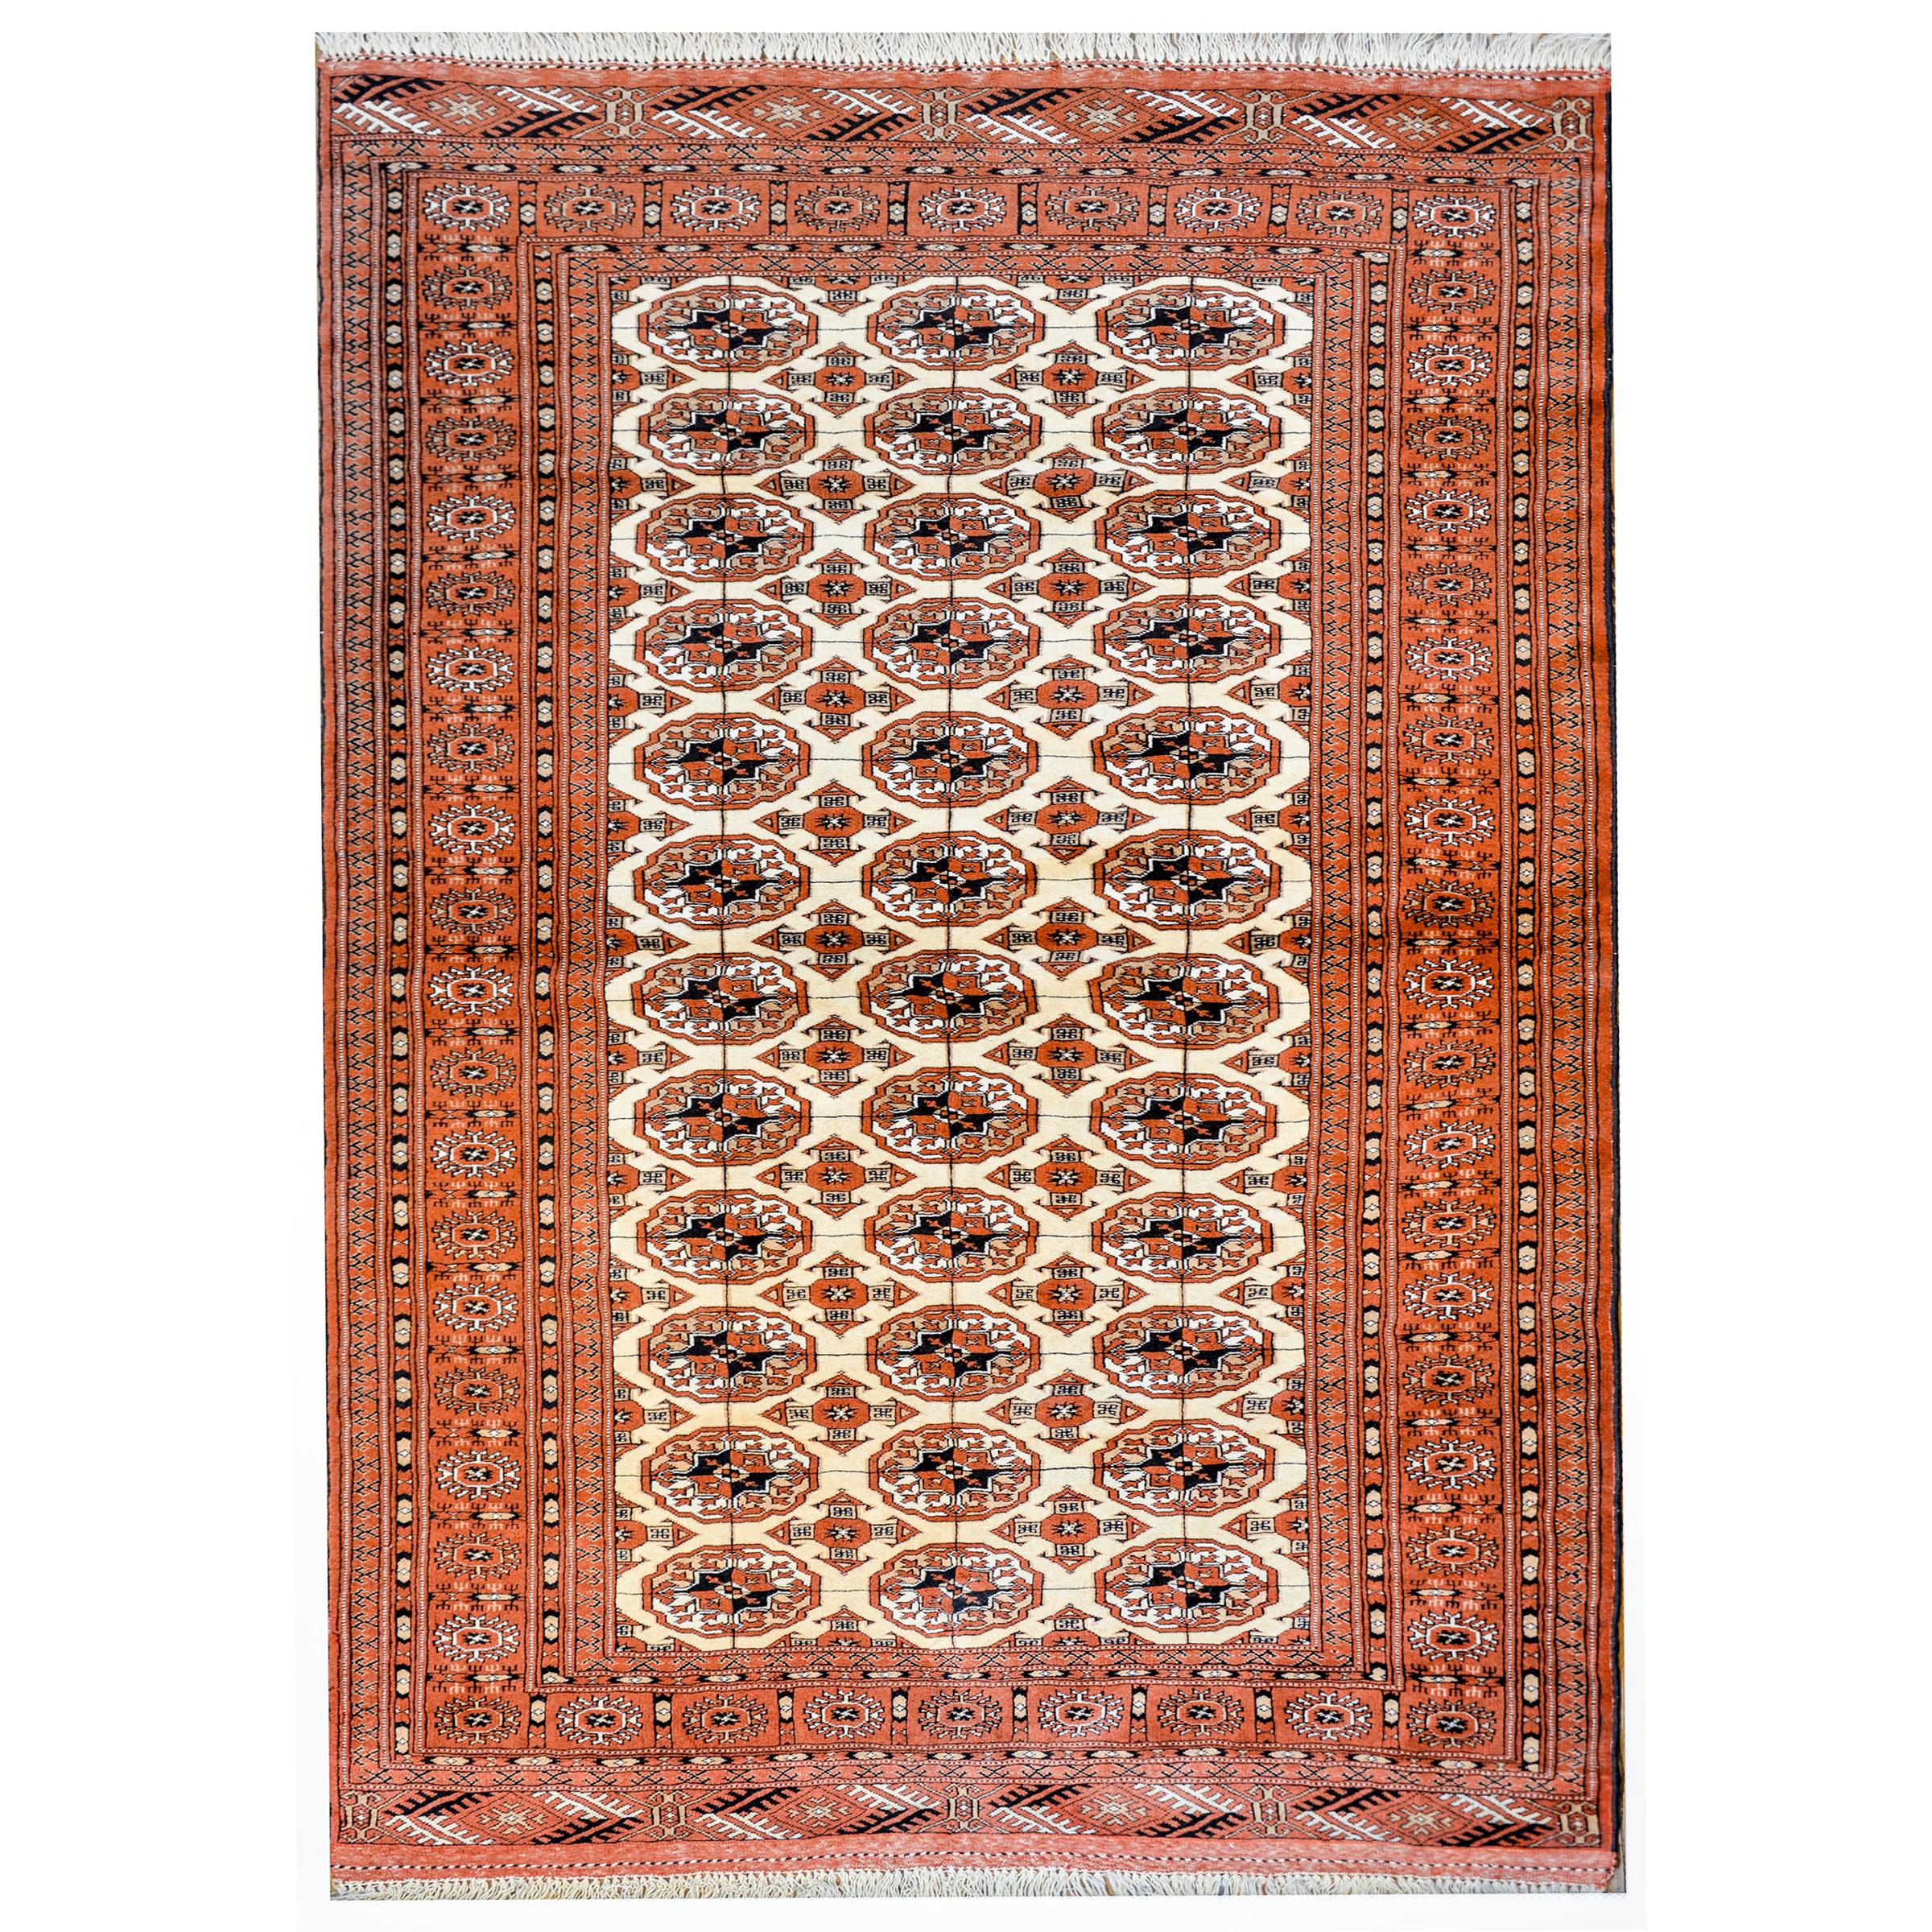 Fantastischer Turkoman-Teppich im Vintage-Stil